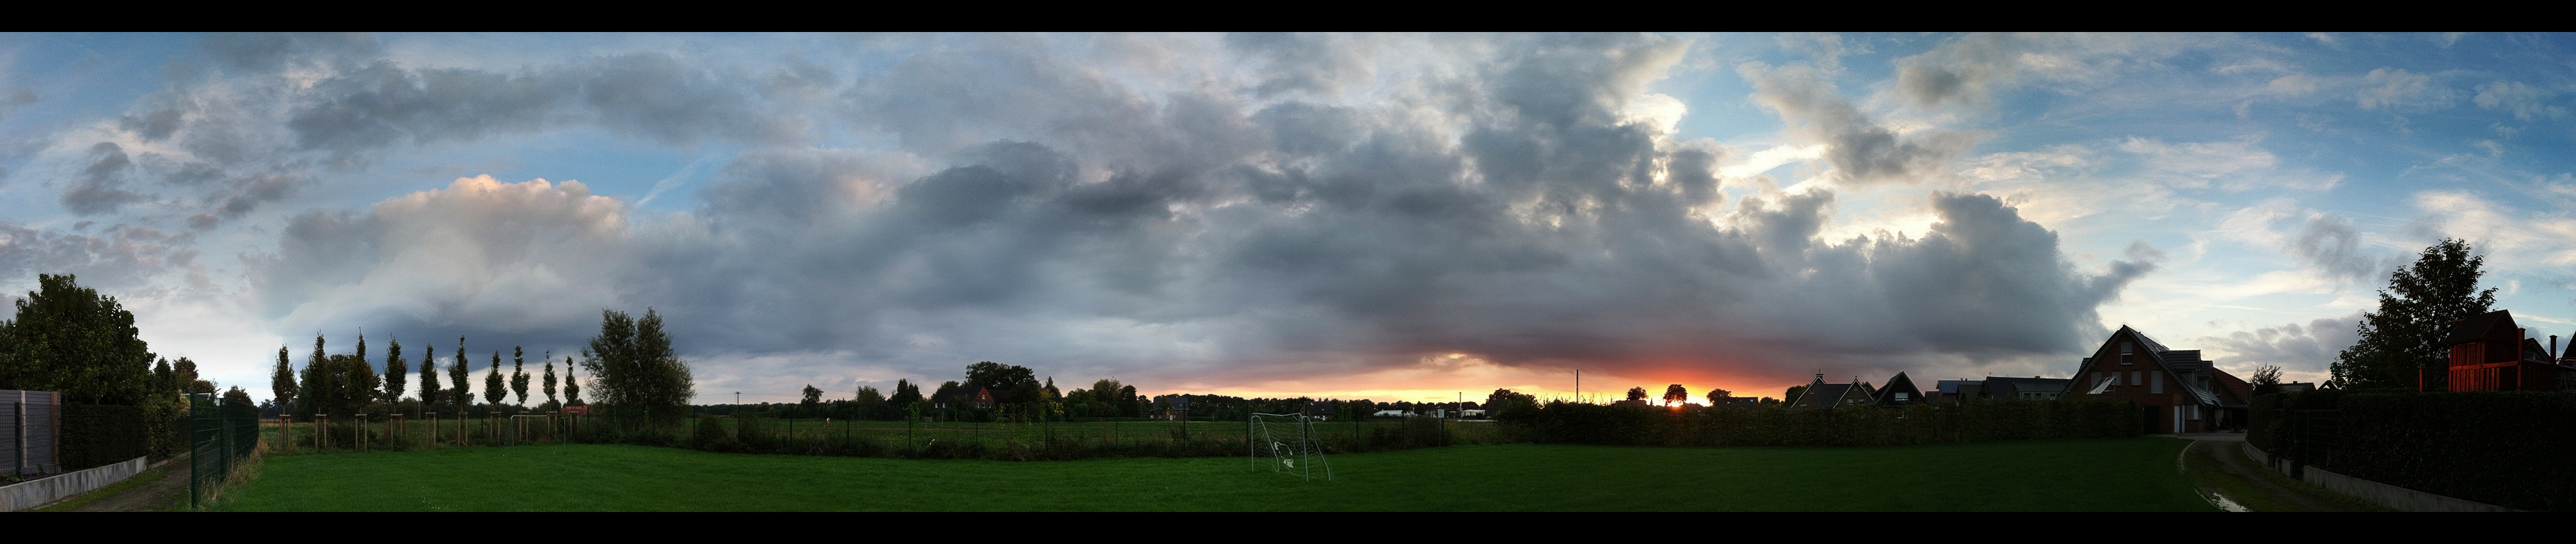 Dingden Sunset (Panorama)